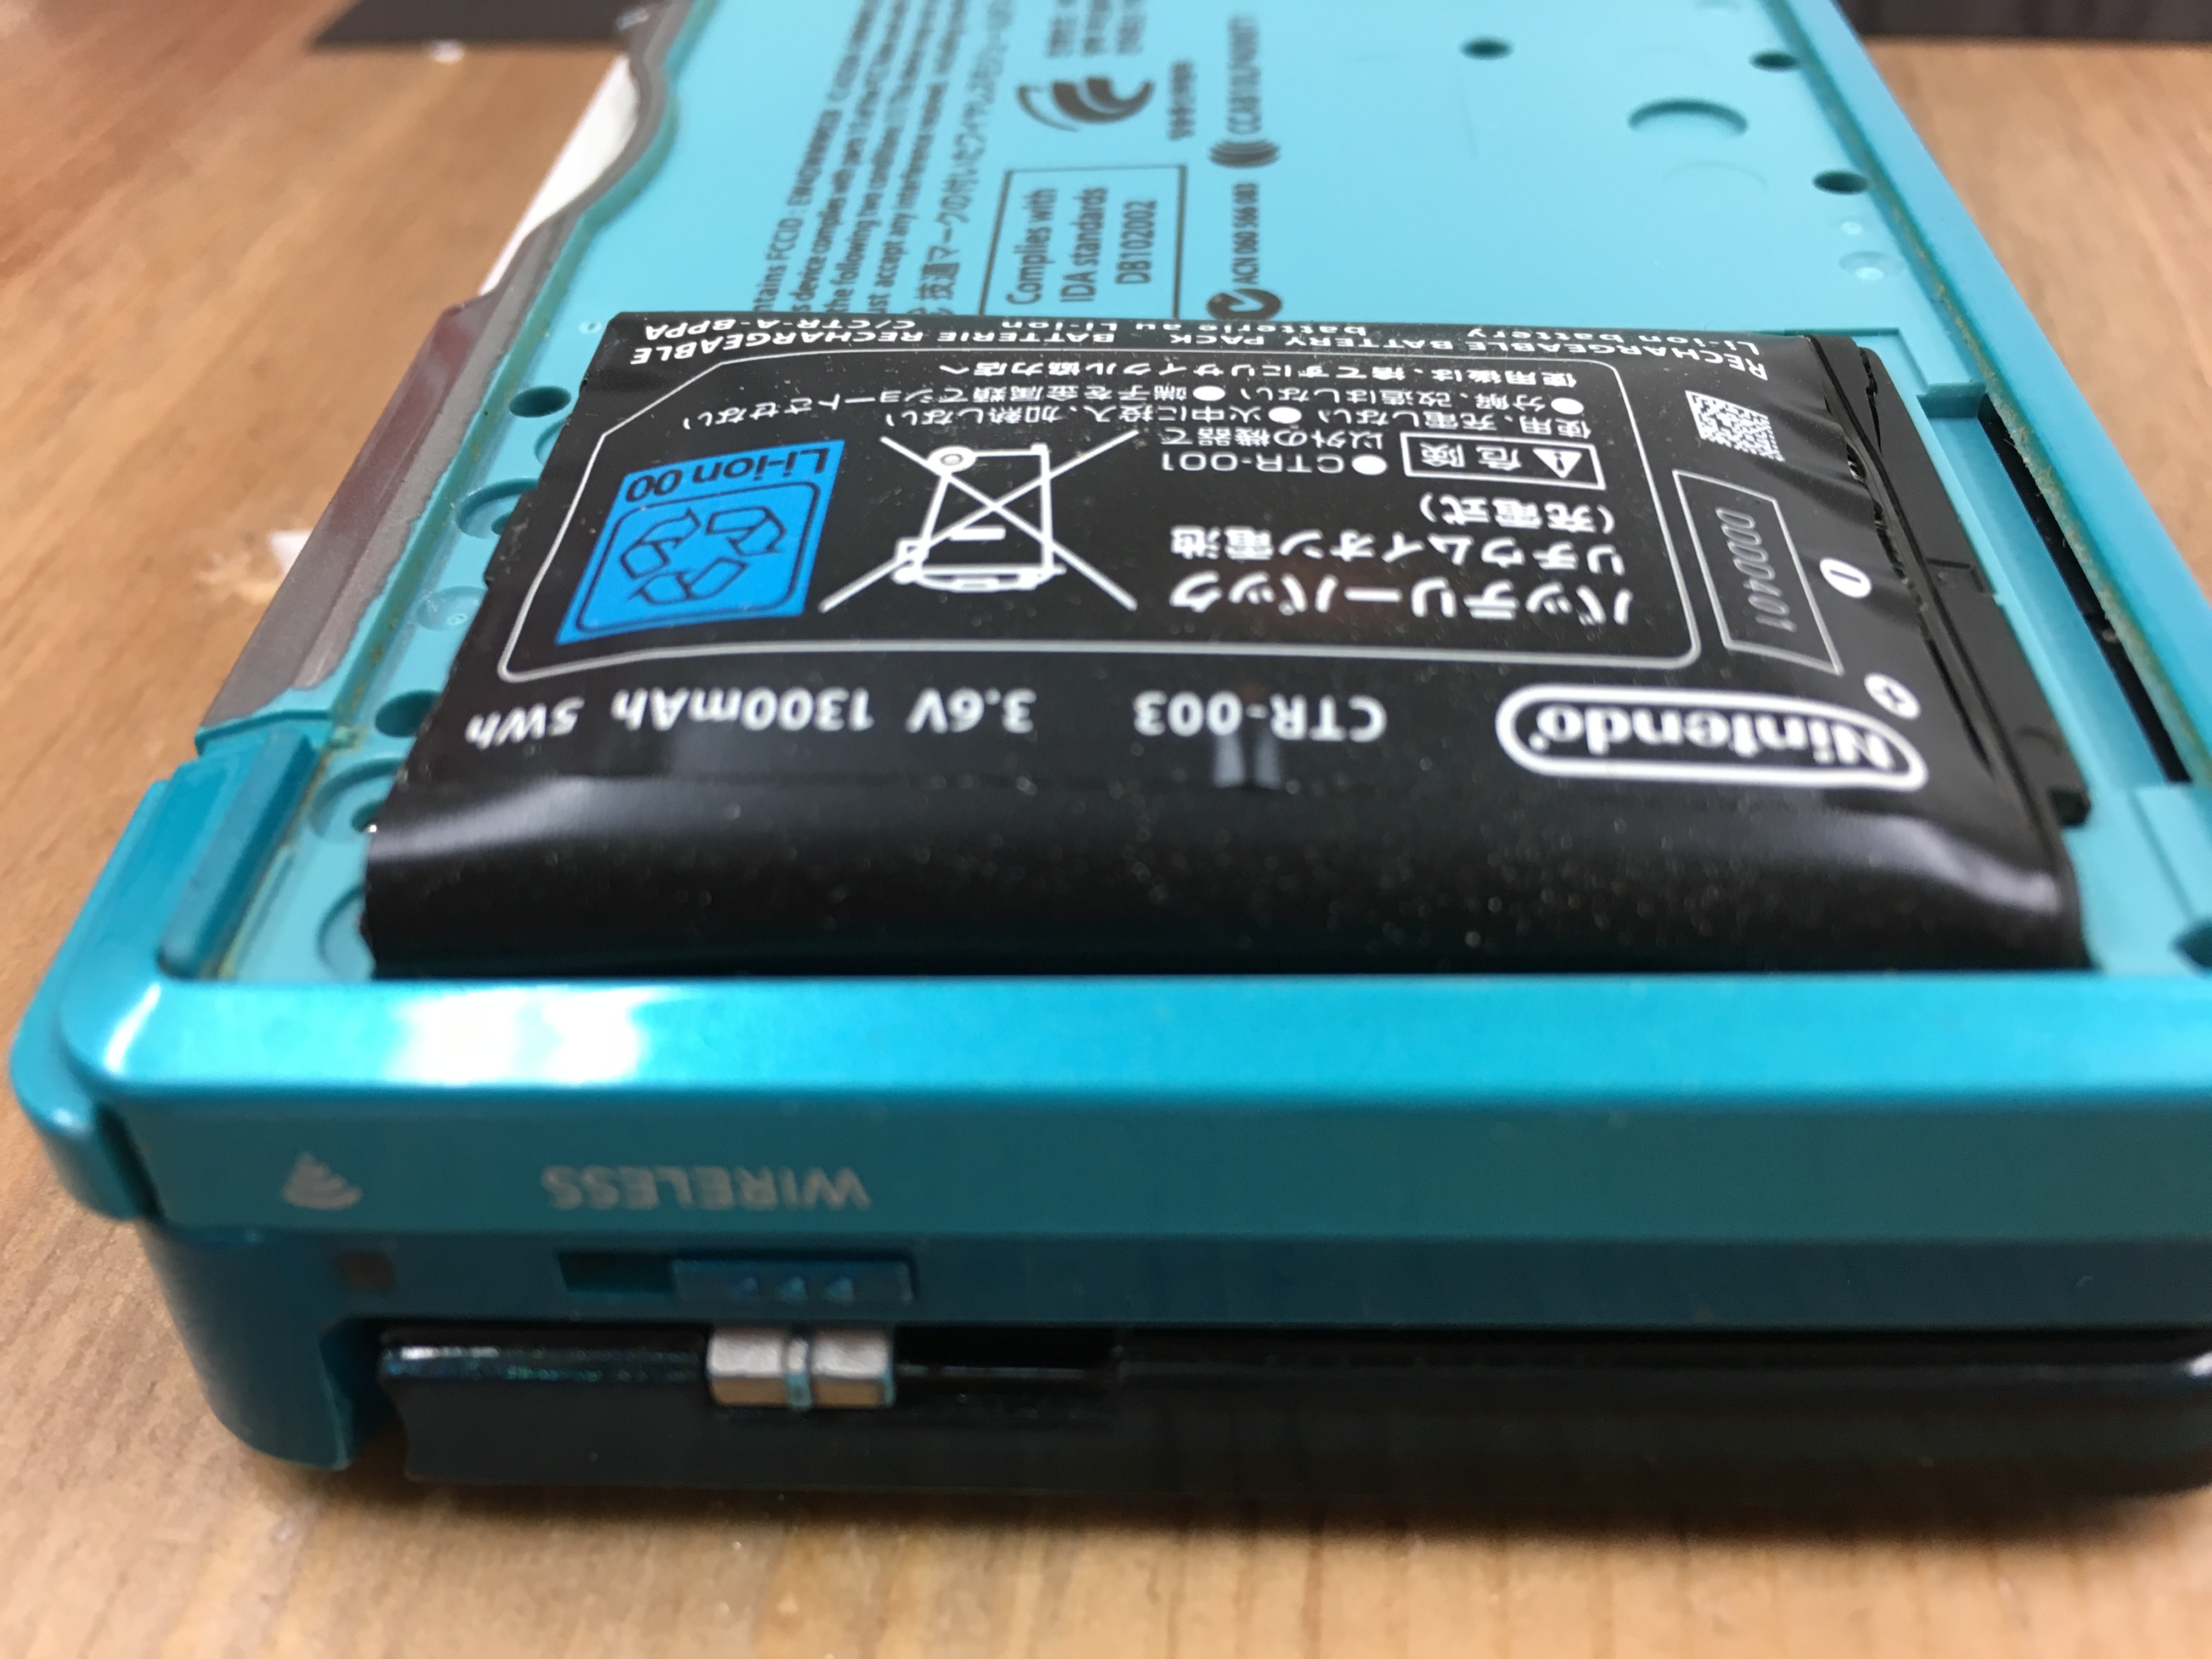 ３dsバッテリーがパンパンに Nintendo3ds Switch Psp 修理のゲームホスピタル Nintendo3ds ニンテンドーds Psp Switch 修理